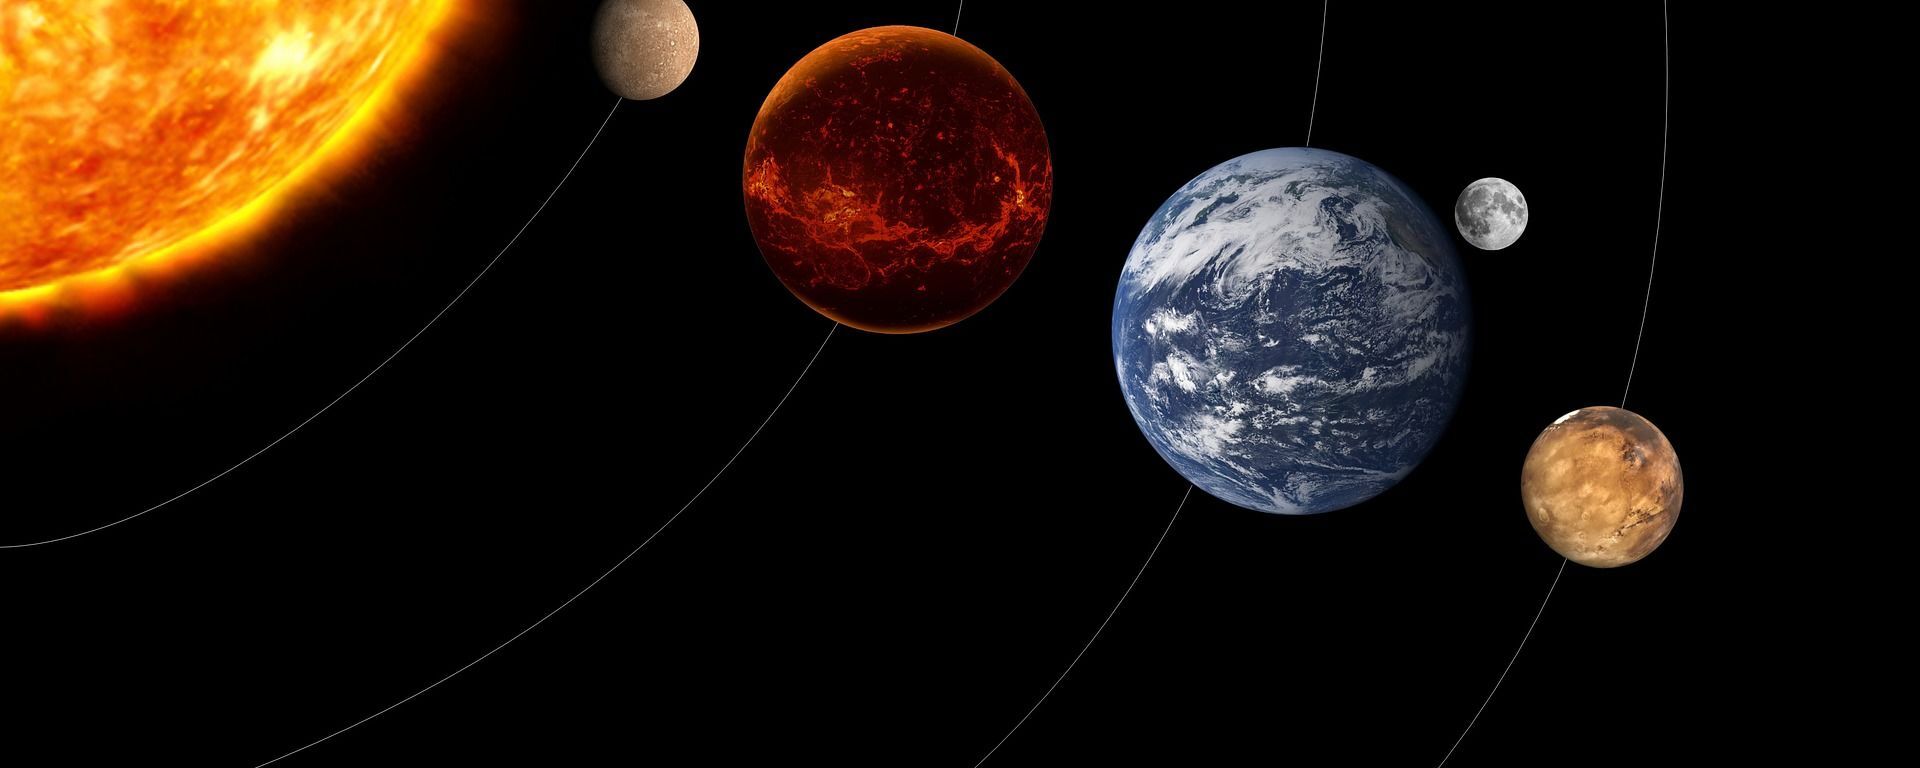 كواكب المجموعة الشمسية - سبوتنيك عربي, 1920, 28.02.2021